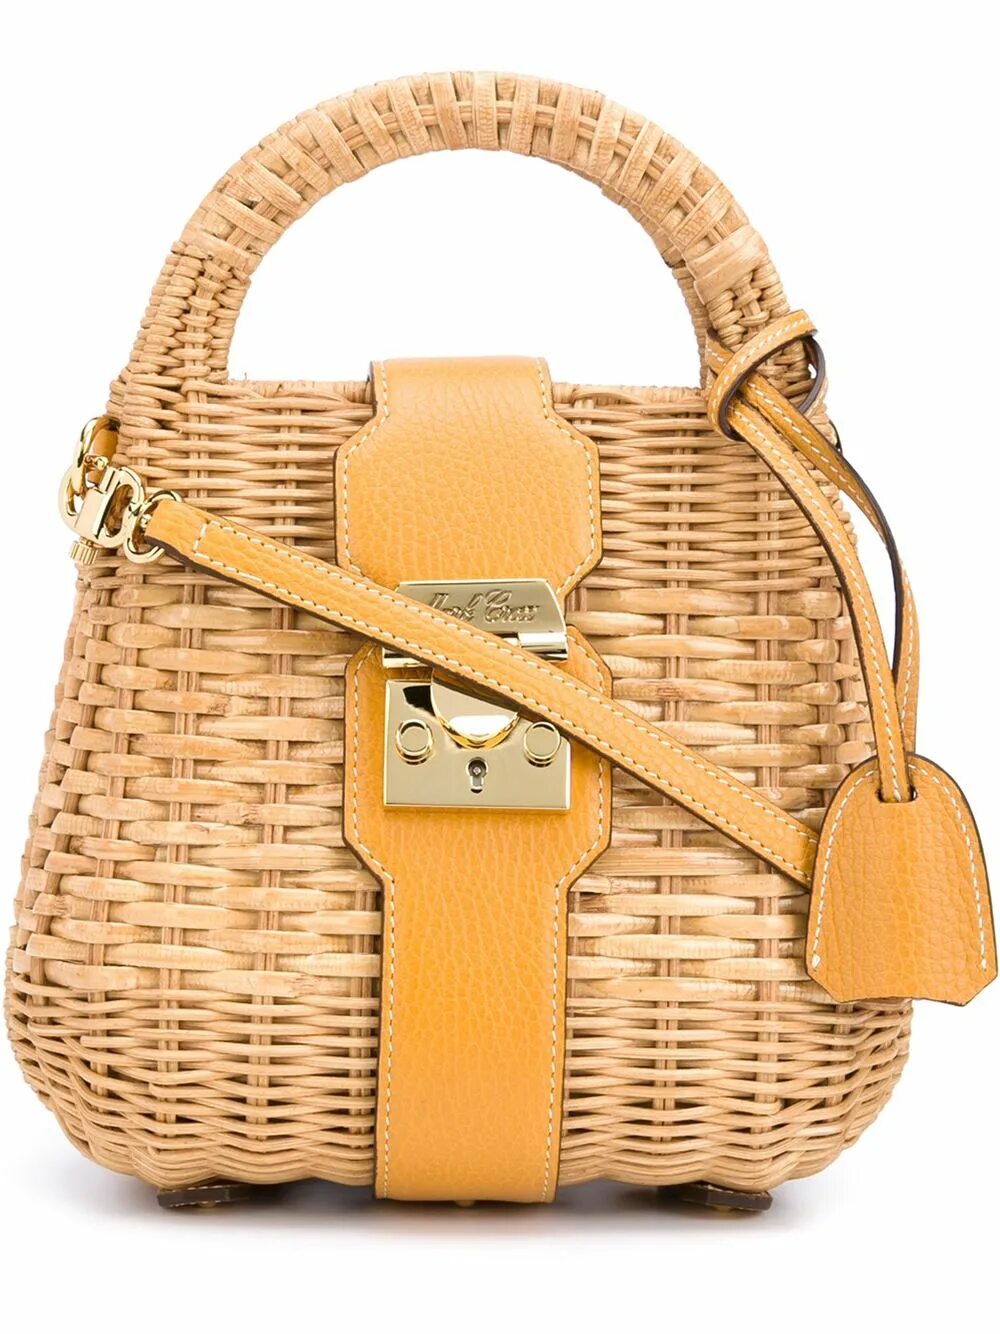 Плетеная сумка купить. Плетеная сумка. Плетеные женские сумочки. Сумки плетеные брендовые. Плетеная сумка корзина.